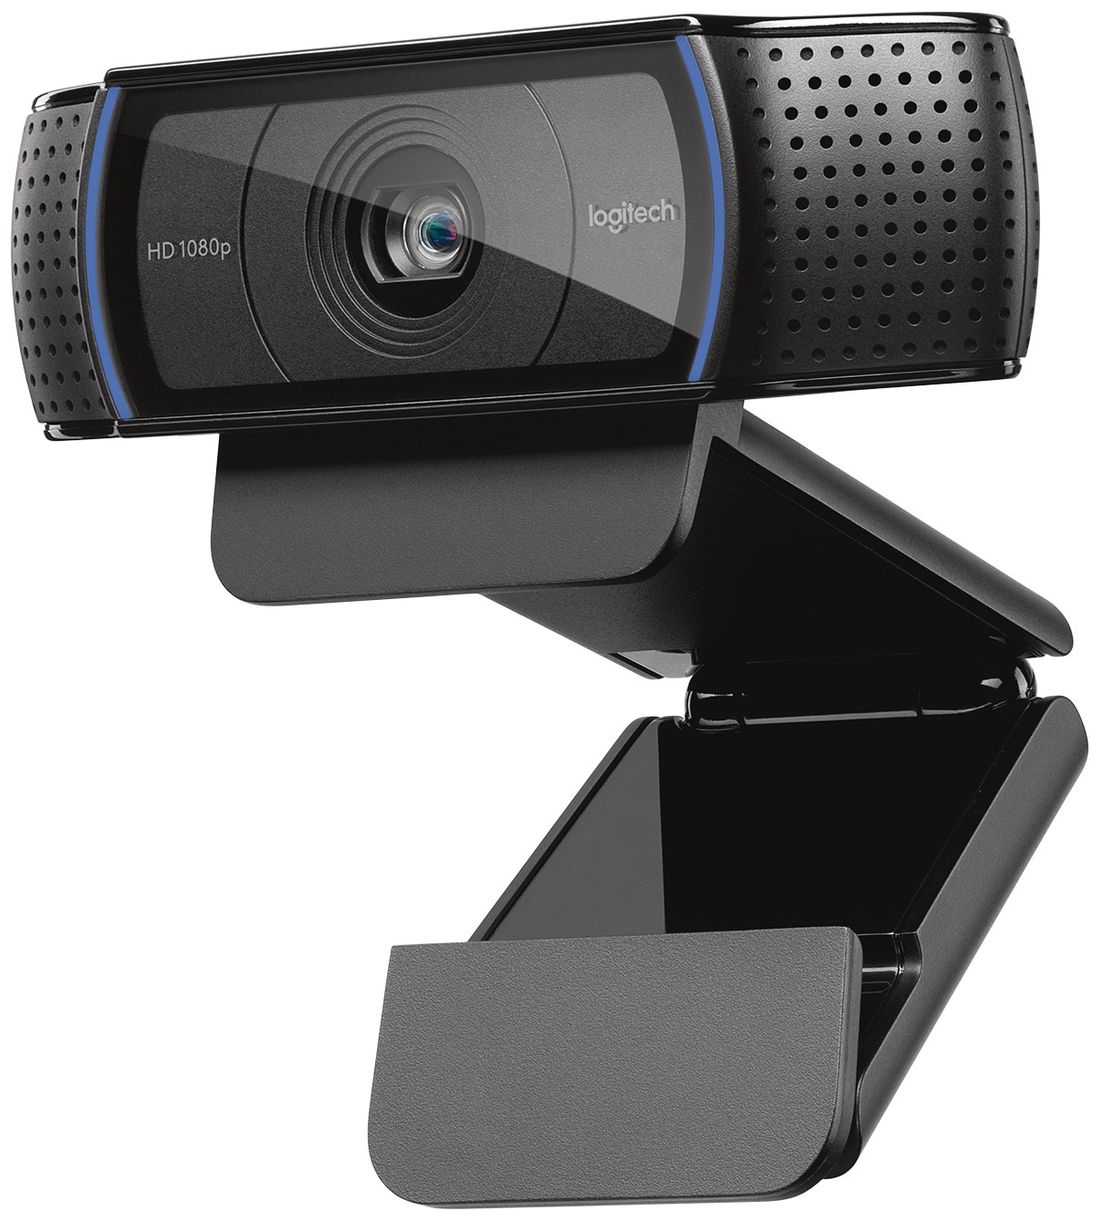 C920 HD Pro 1080p Full HD 1920 x 1080 Pixel Webcam 